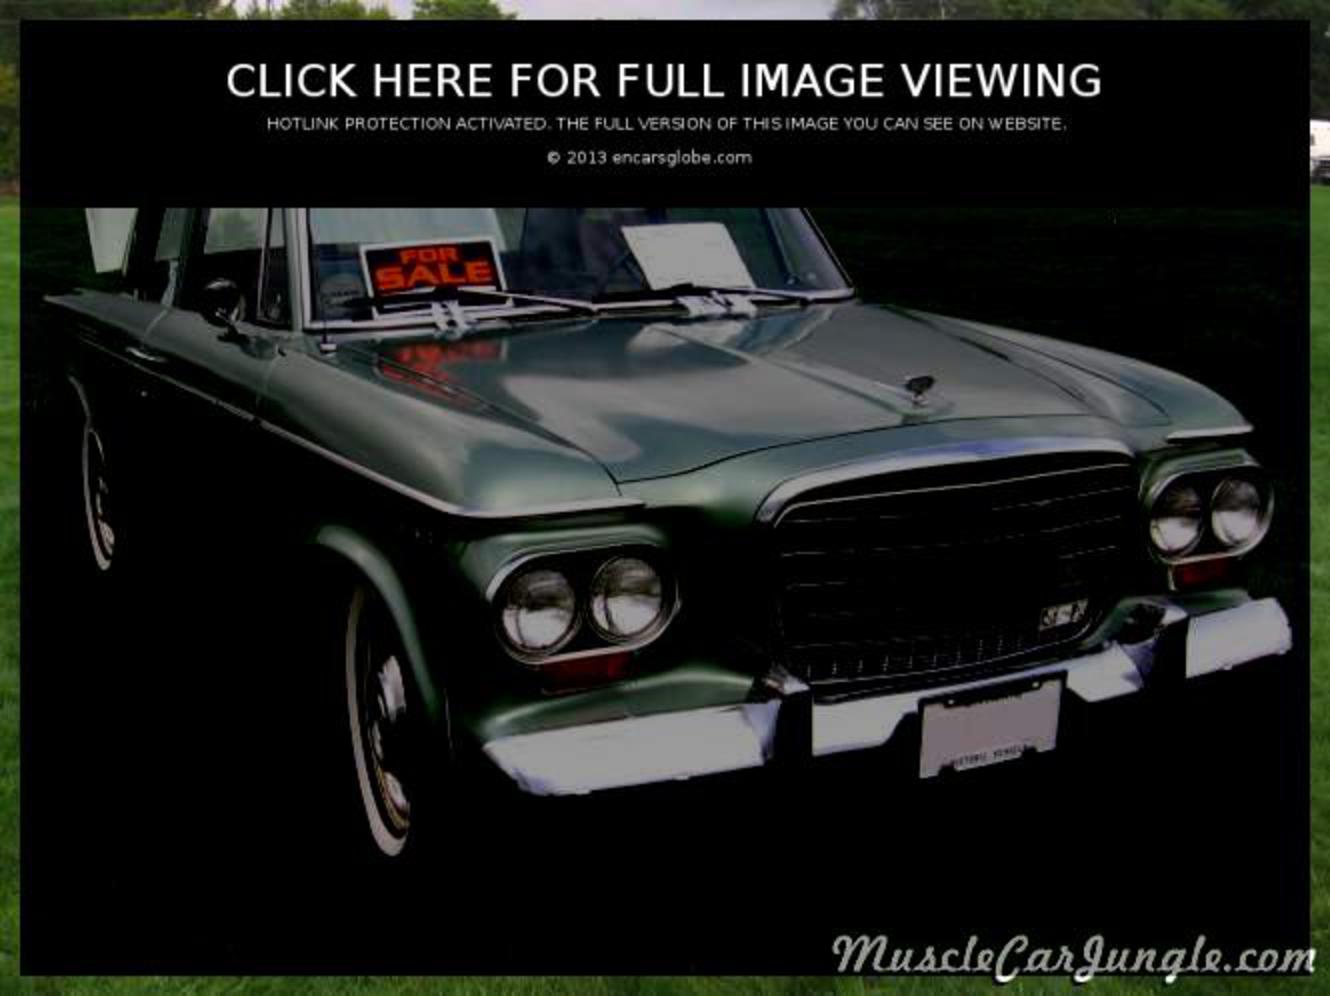 Studebaker Lark 3 Door Sedan: Photo gallery, complete information ...